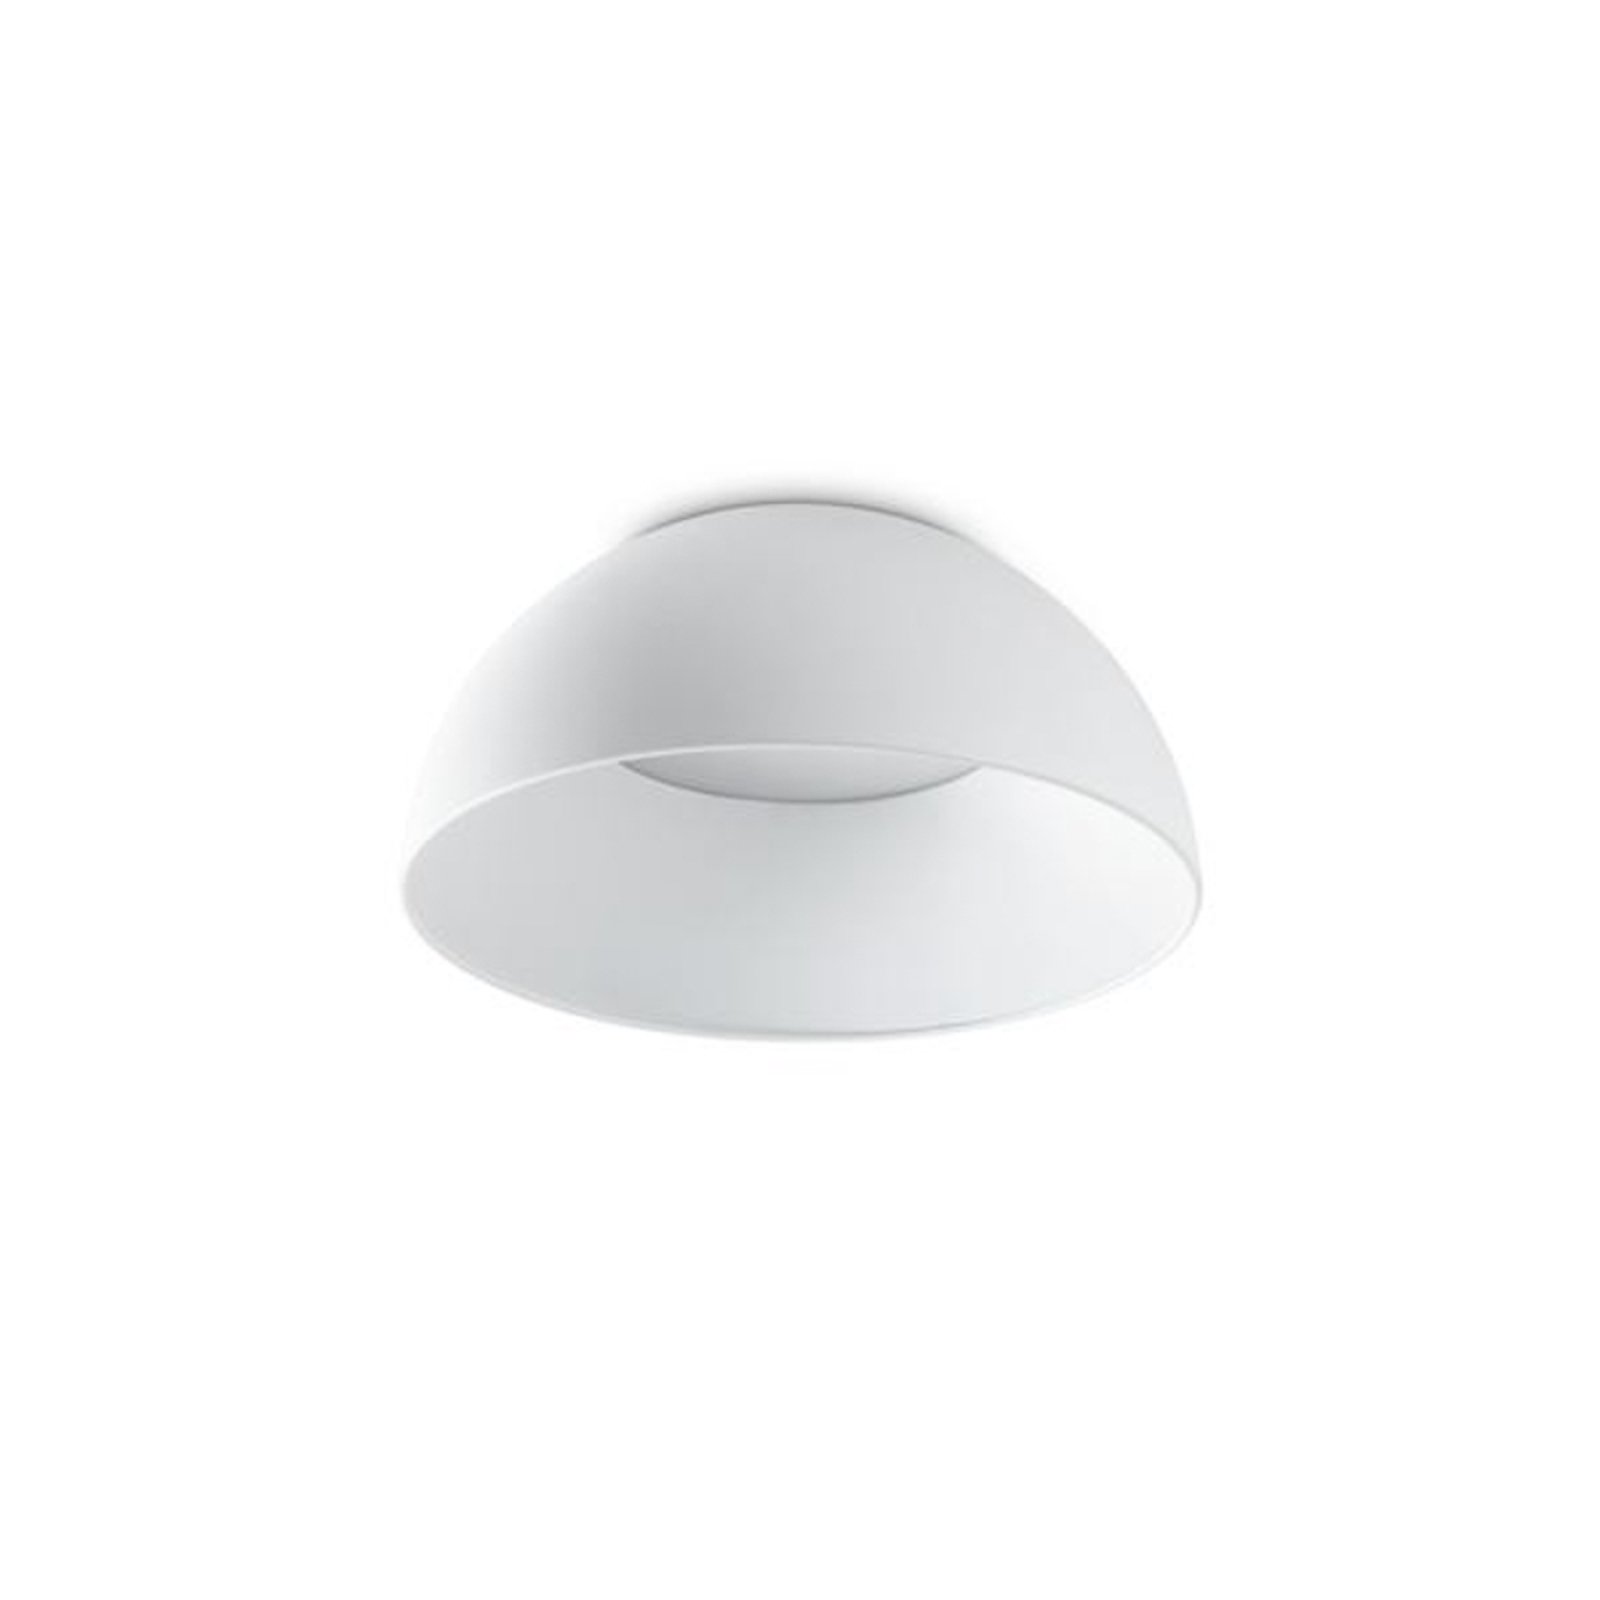 Ideal Lux LED stropné svietidlo Corolla-1, biele, kov, Ø 35 cm